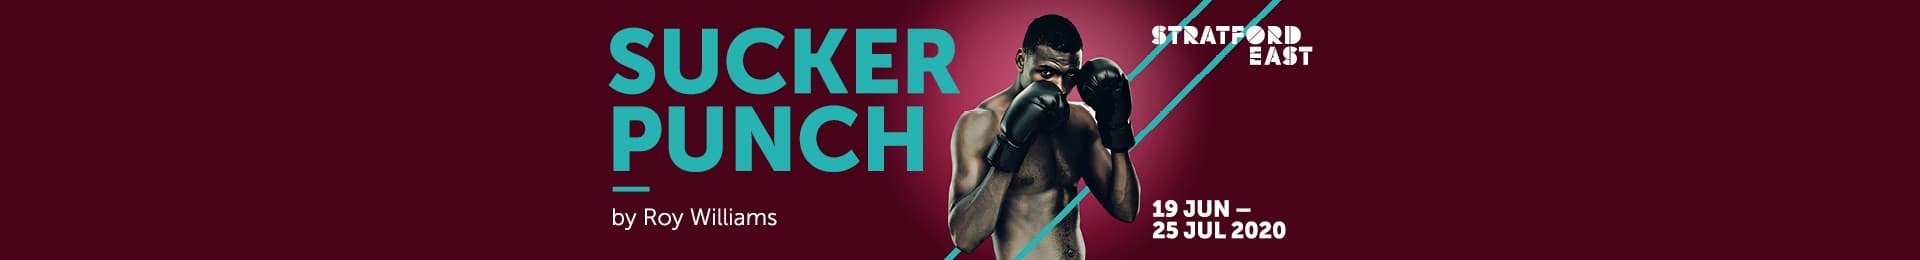 Sucker Punch banner image